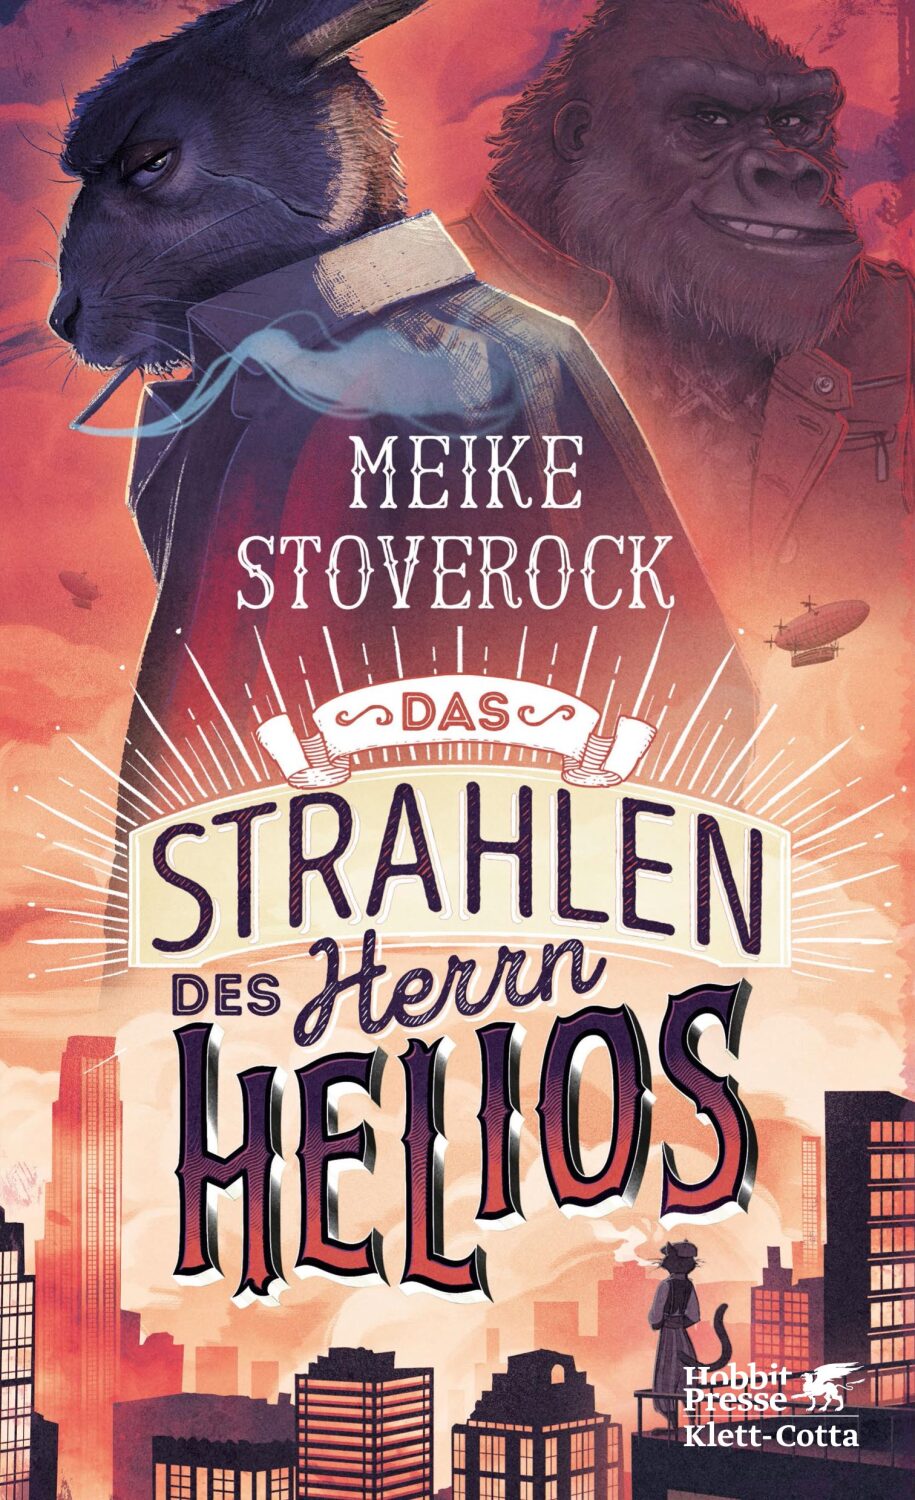 Cover des Buches "Das Strahlen des Herrn Helios" von Meike Stoverock